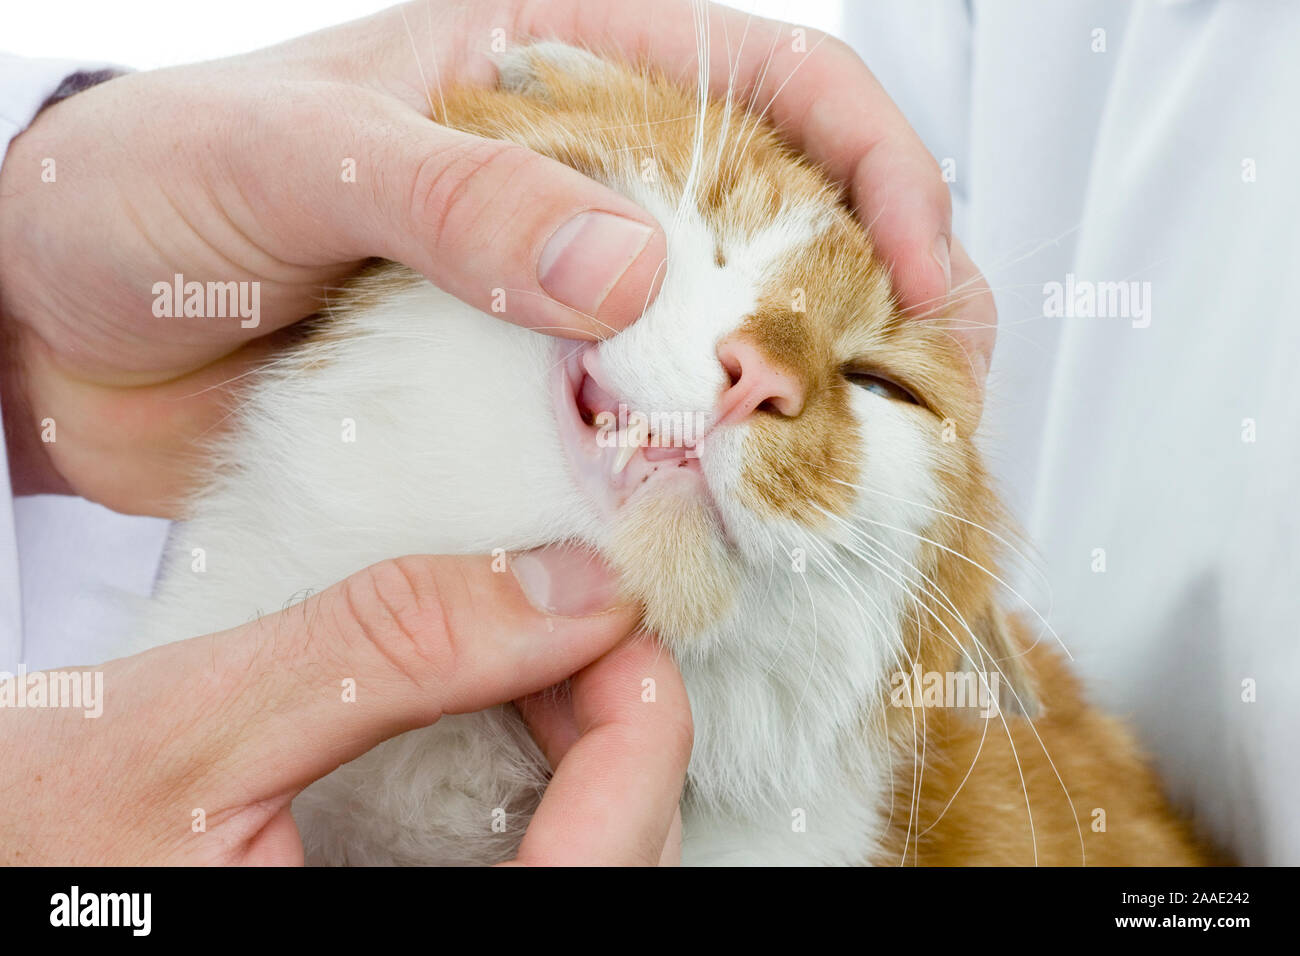 Katze bekommt Zahnuntersuchung Stock Photo